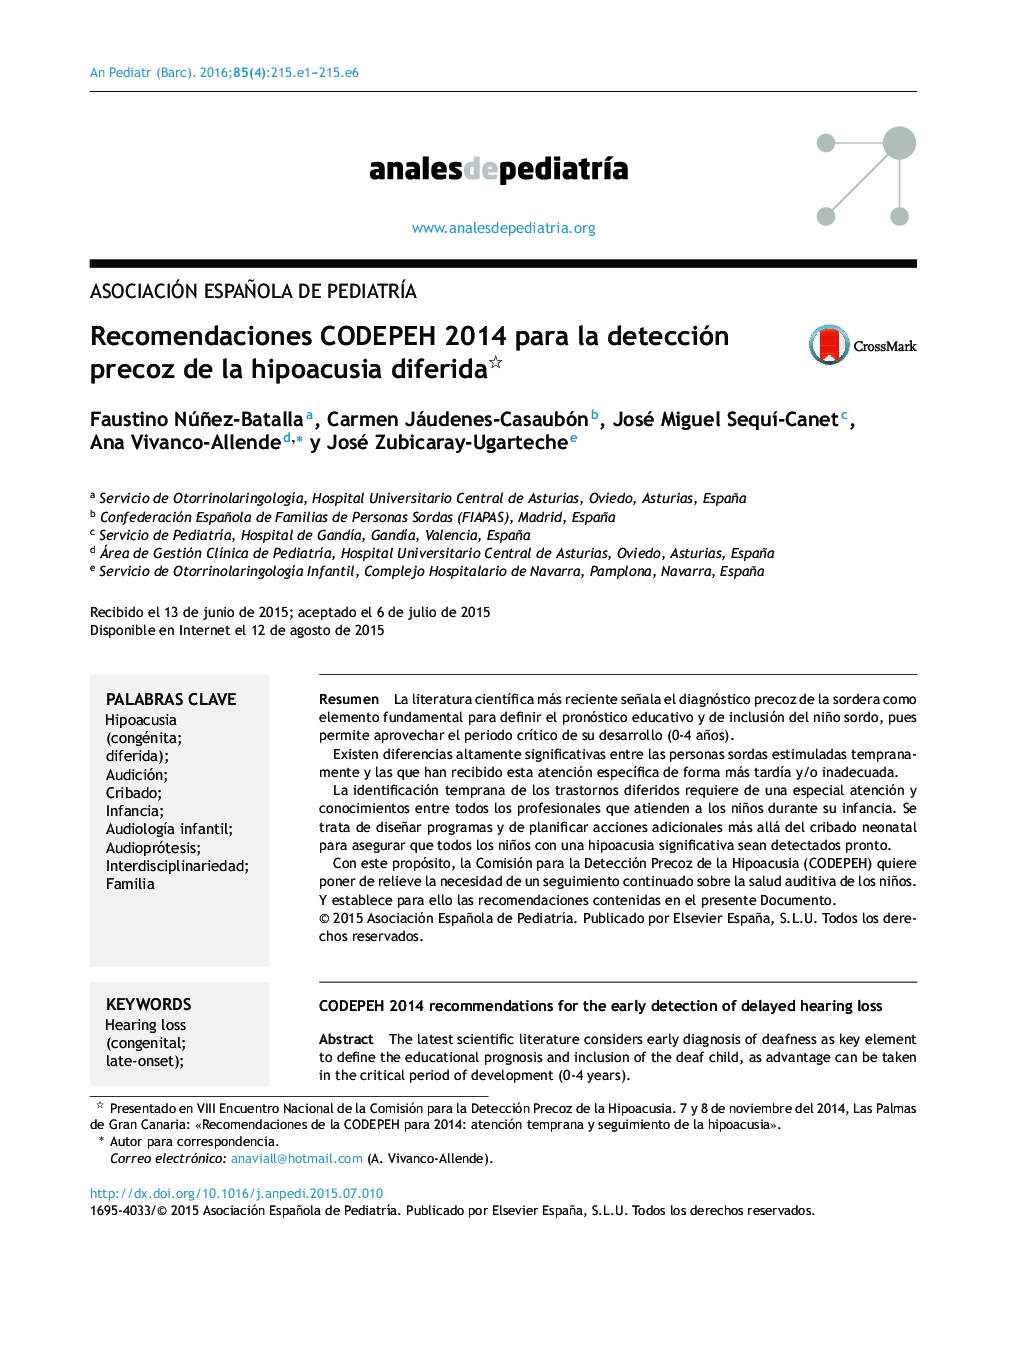 Recomendaciones CODEPEH 2014 para la detección precoz de la hipoacusia diferida